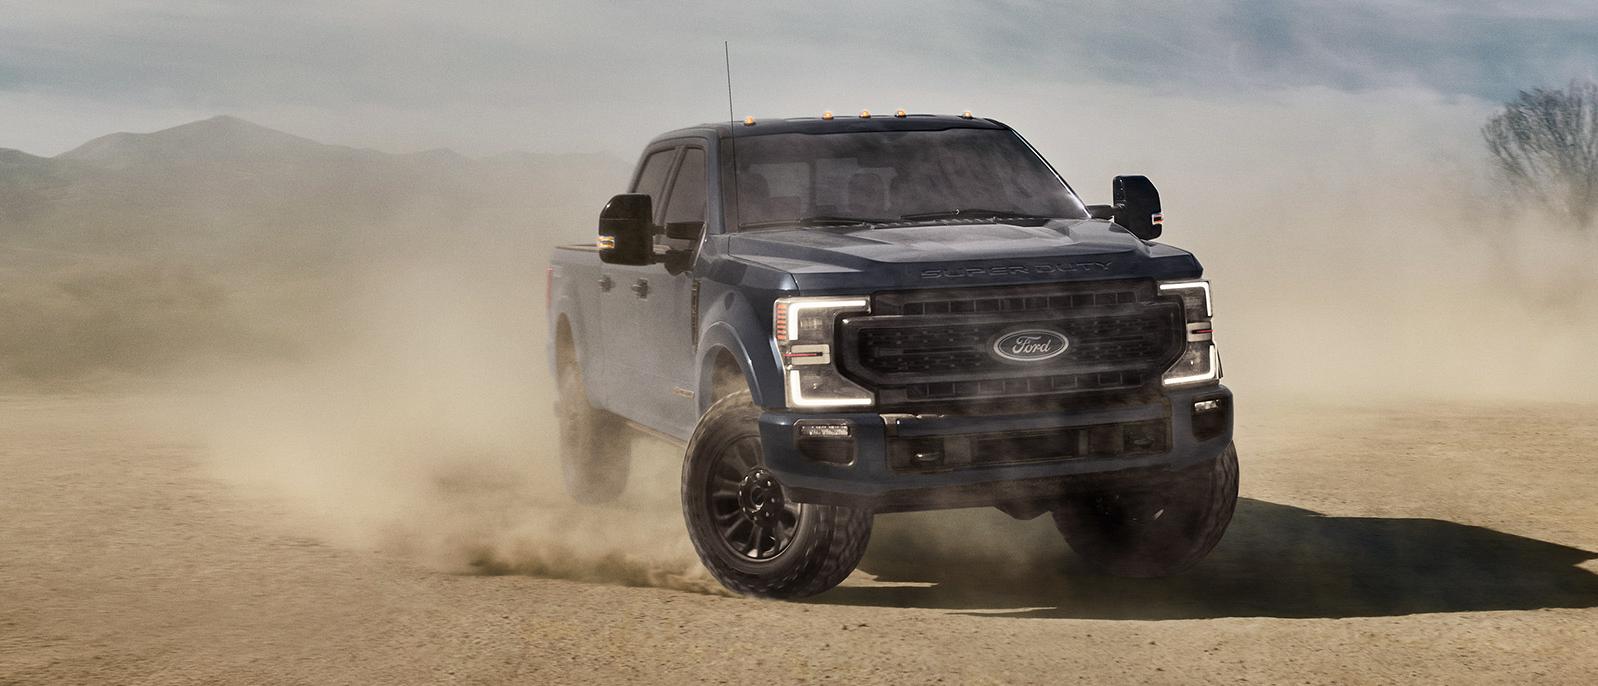 2022 dark blue Ford Super Duty in the desert.